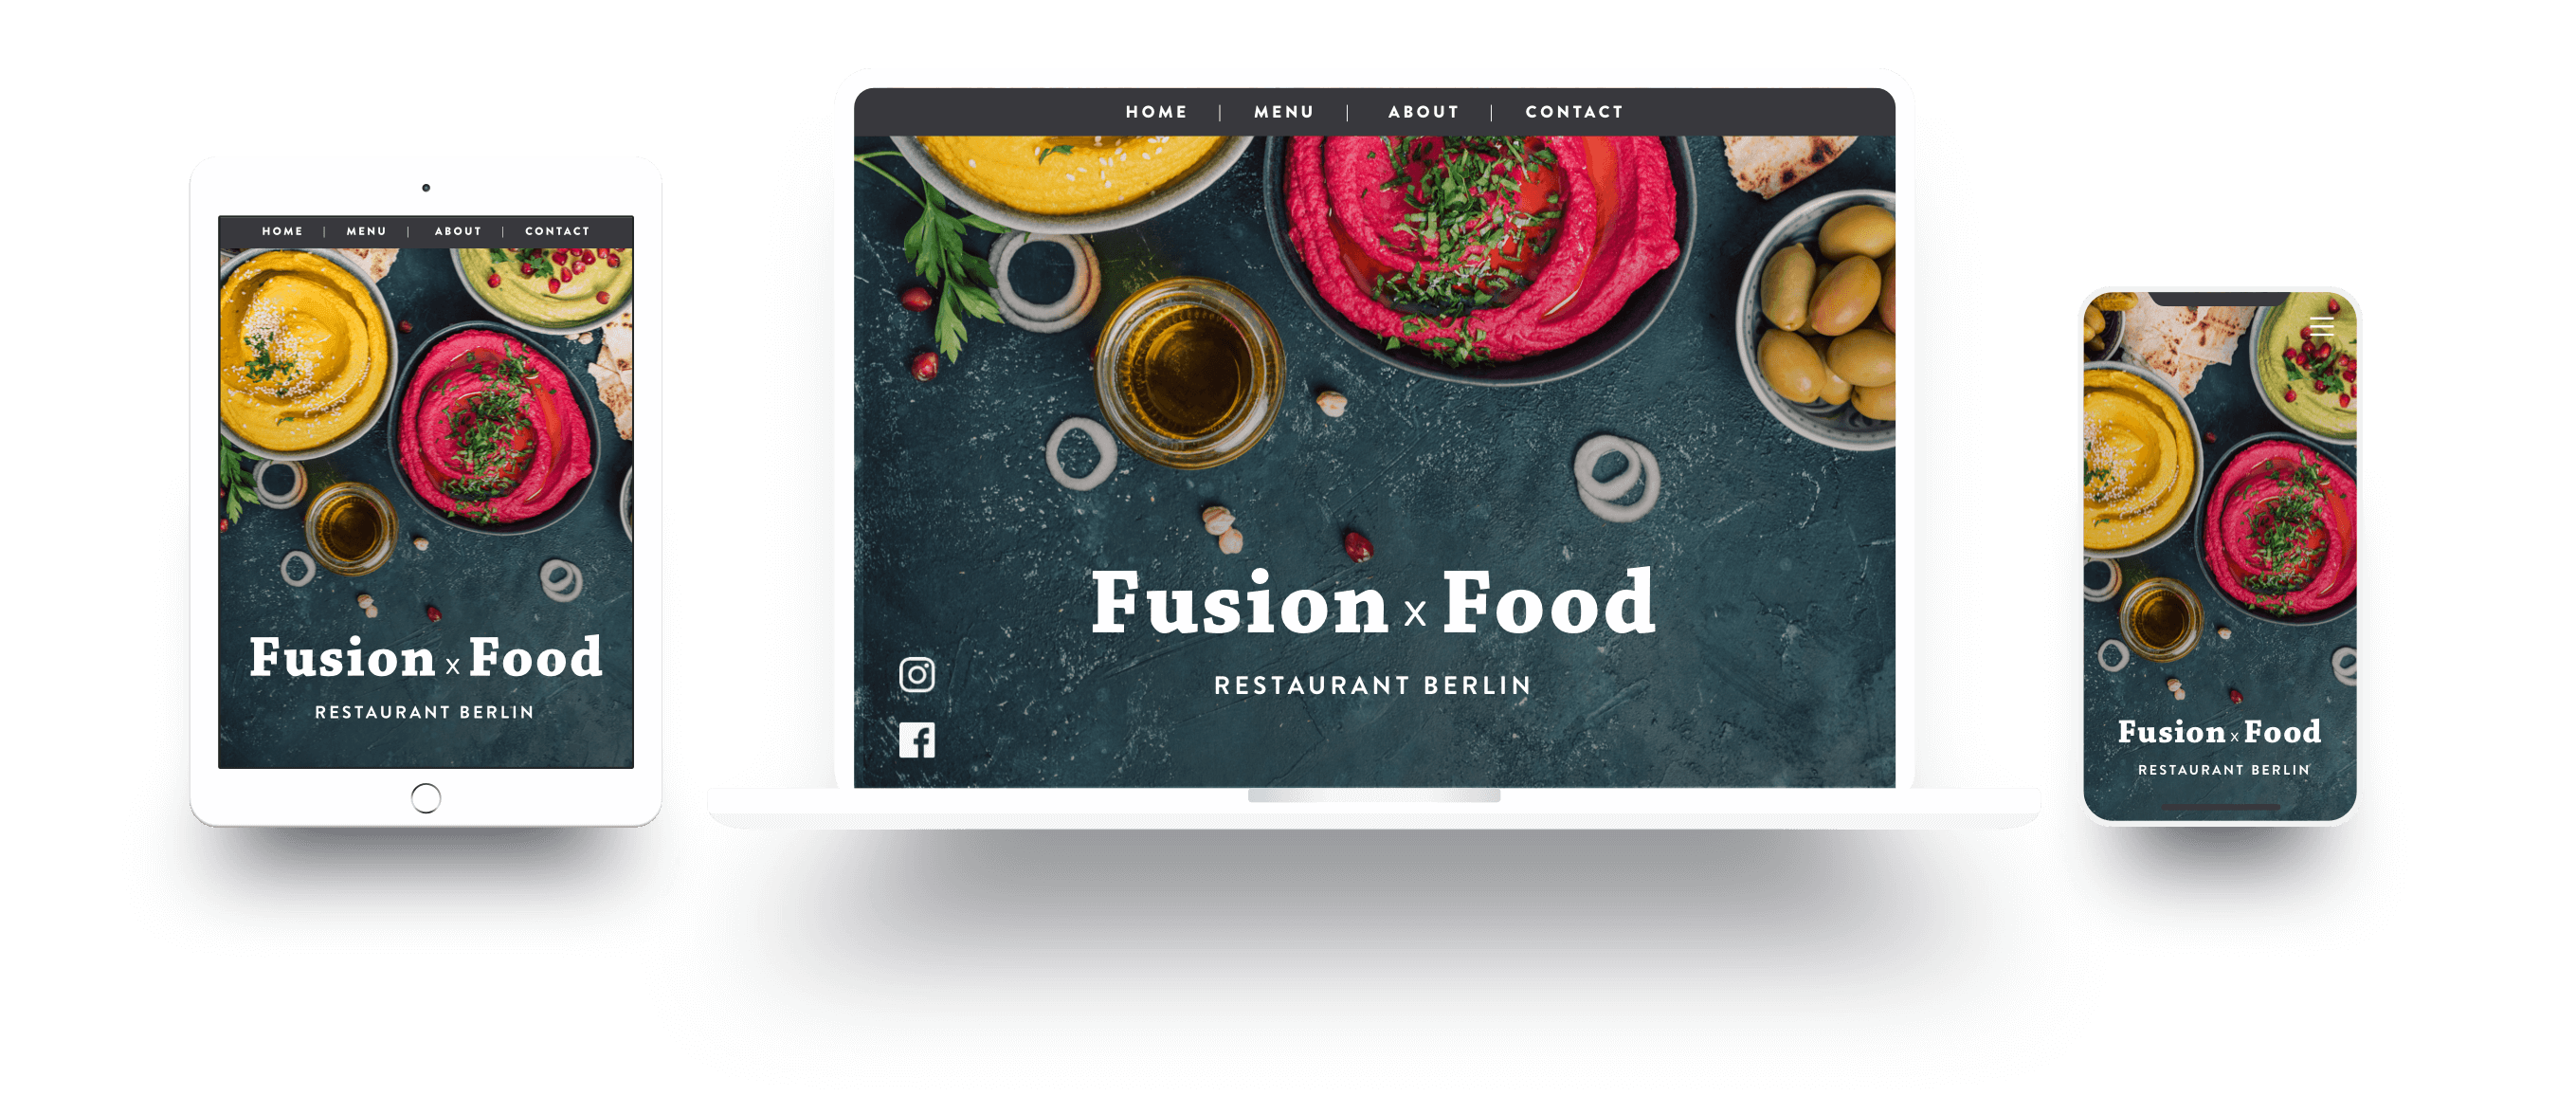 Voorbeeld van een restaurant website met responsive design op verschillende apparaten: telefoon, tablet en laptop.